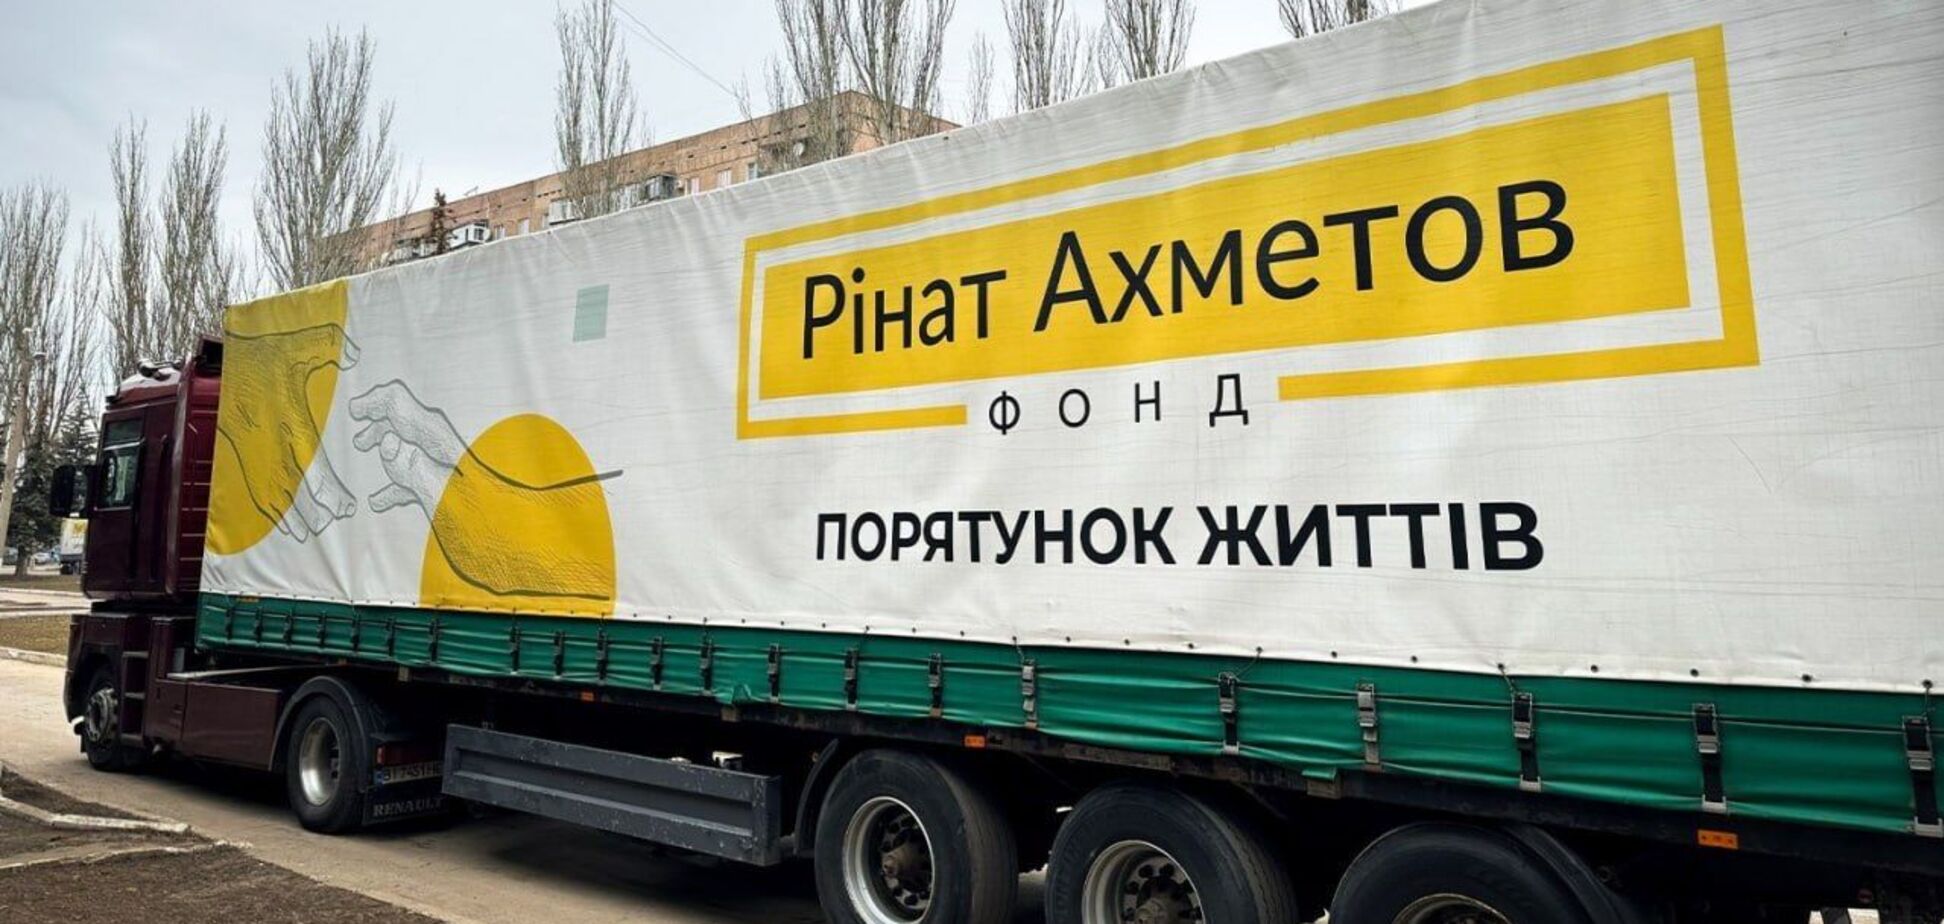 Переселенцям з Луганської області відправили майже 6 тисяч проднаборів від Фонду Ріната Ахметова